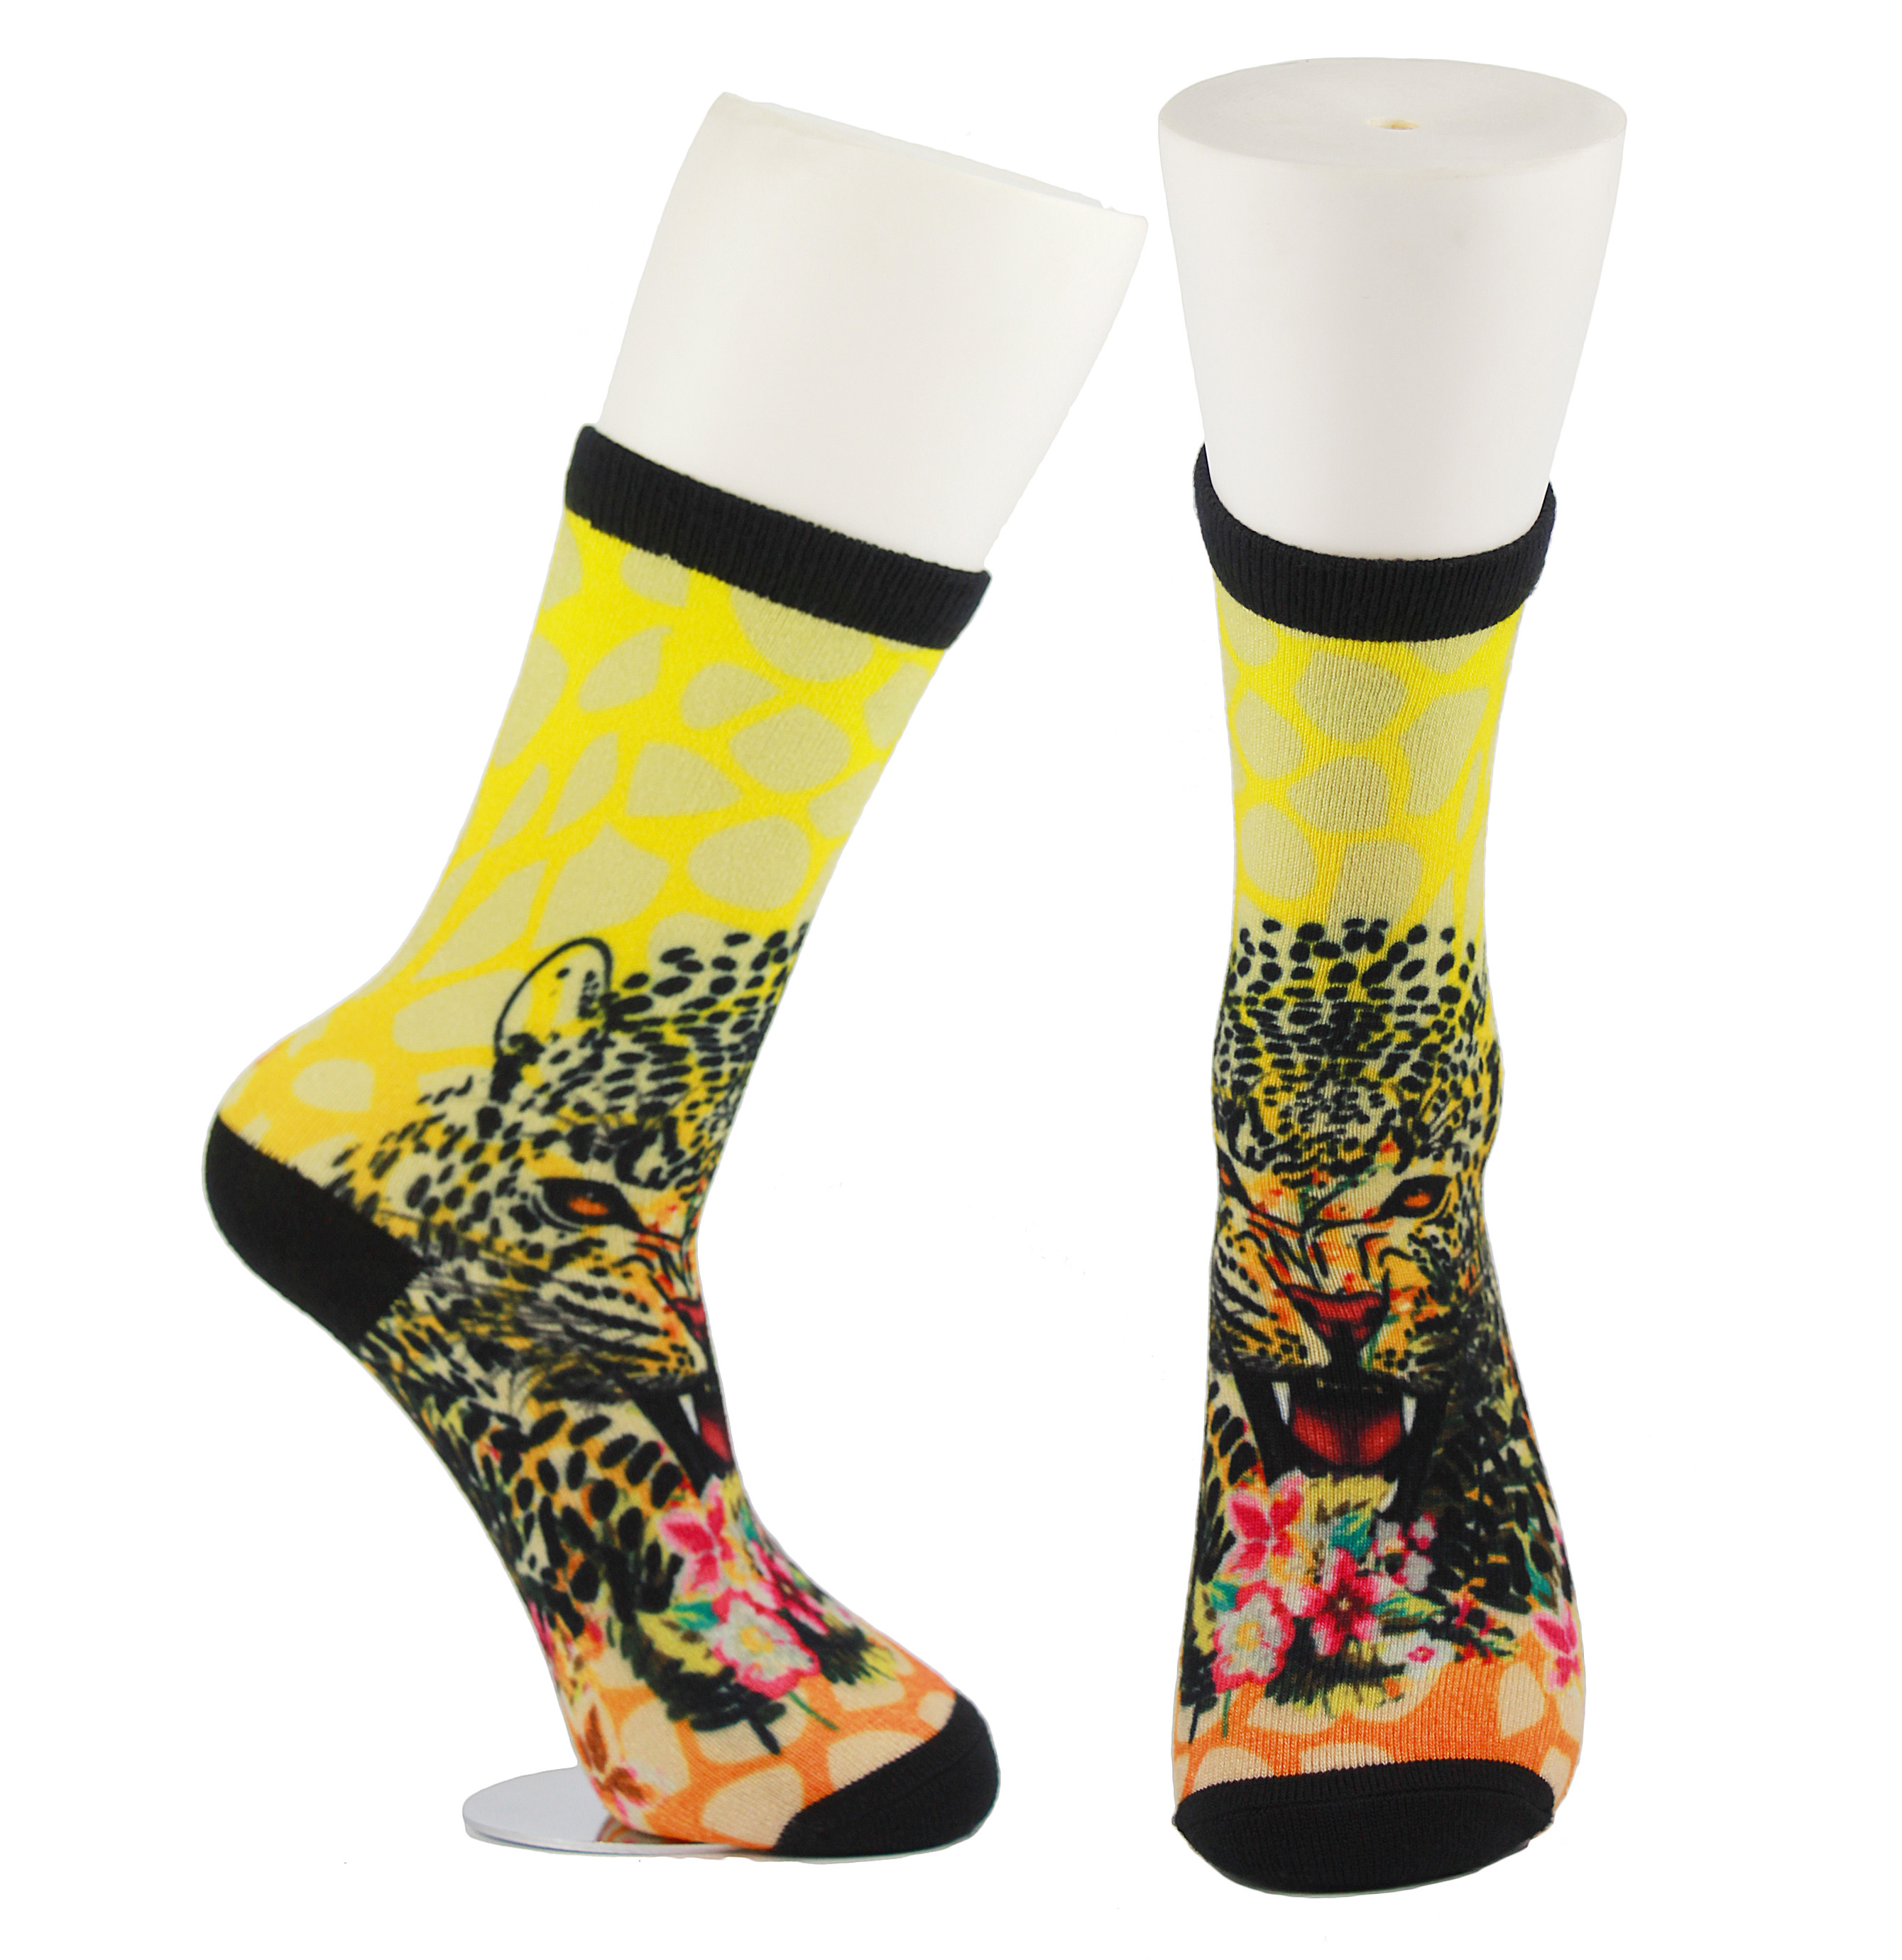 Anti calzini stampati abitudine gialla di slittamento, calzini stampati svegli molli amichevoli eco-